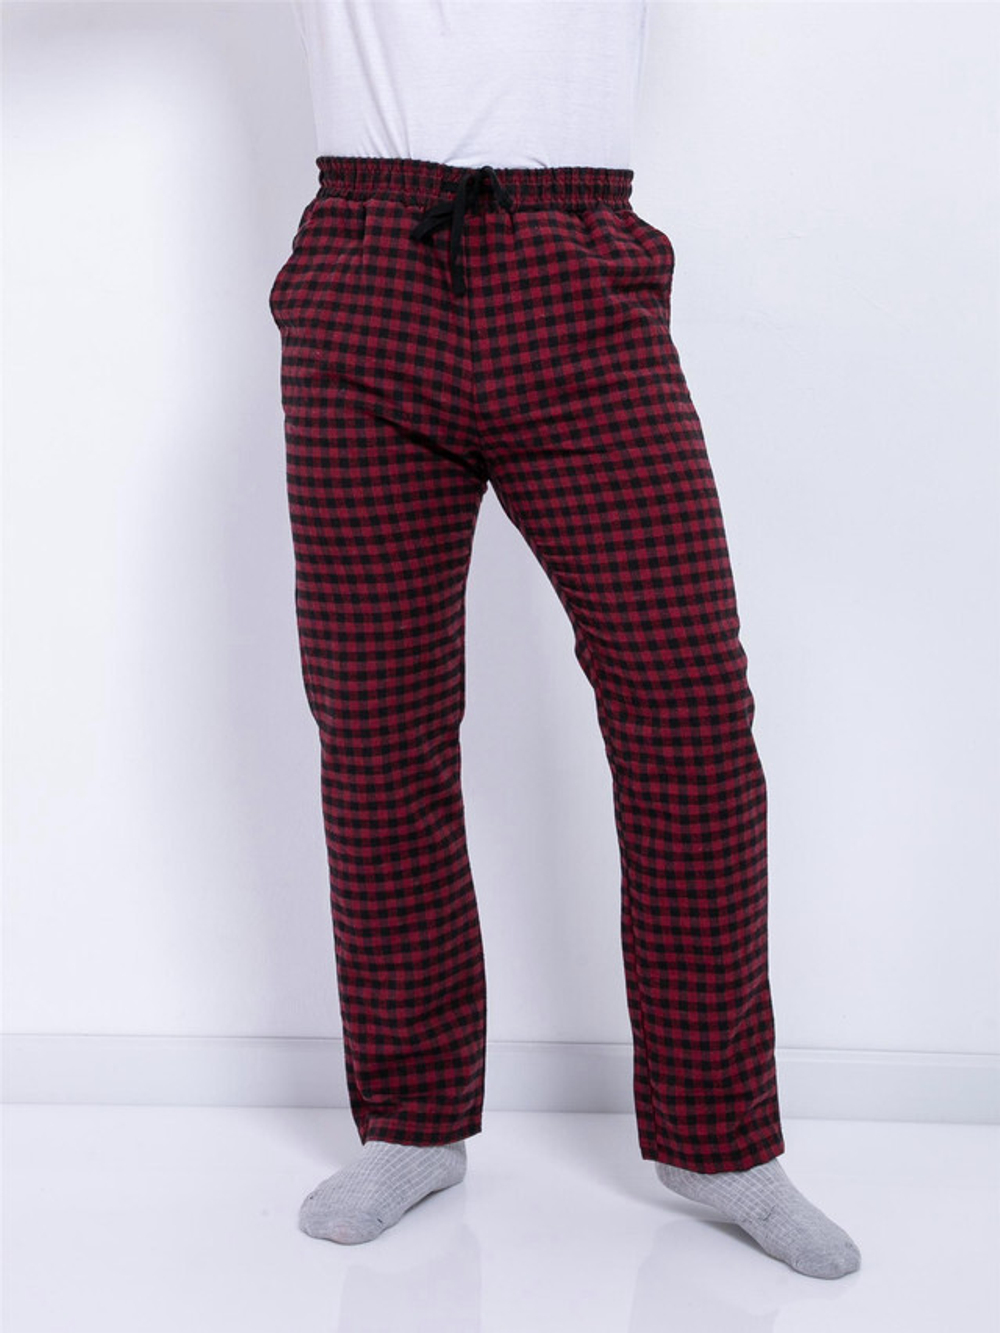 Мужские пижамные брюки для комфорта и стиля в доме - Высококачественный хлопок и уникальный дизайн - 09197